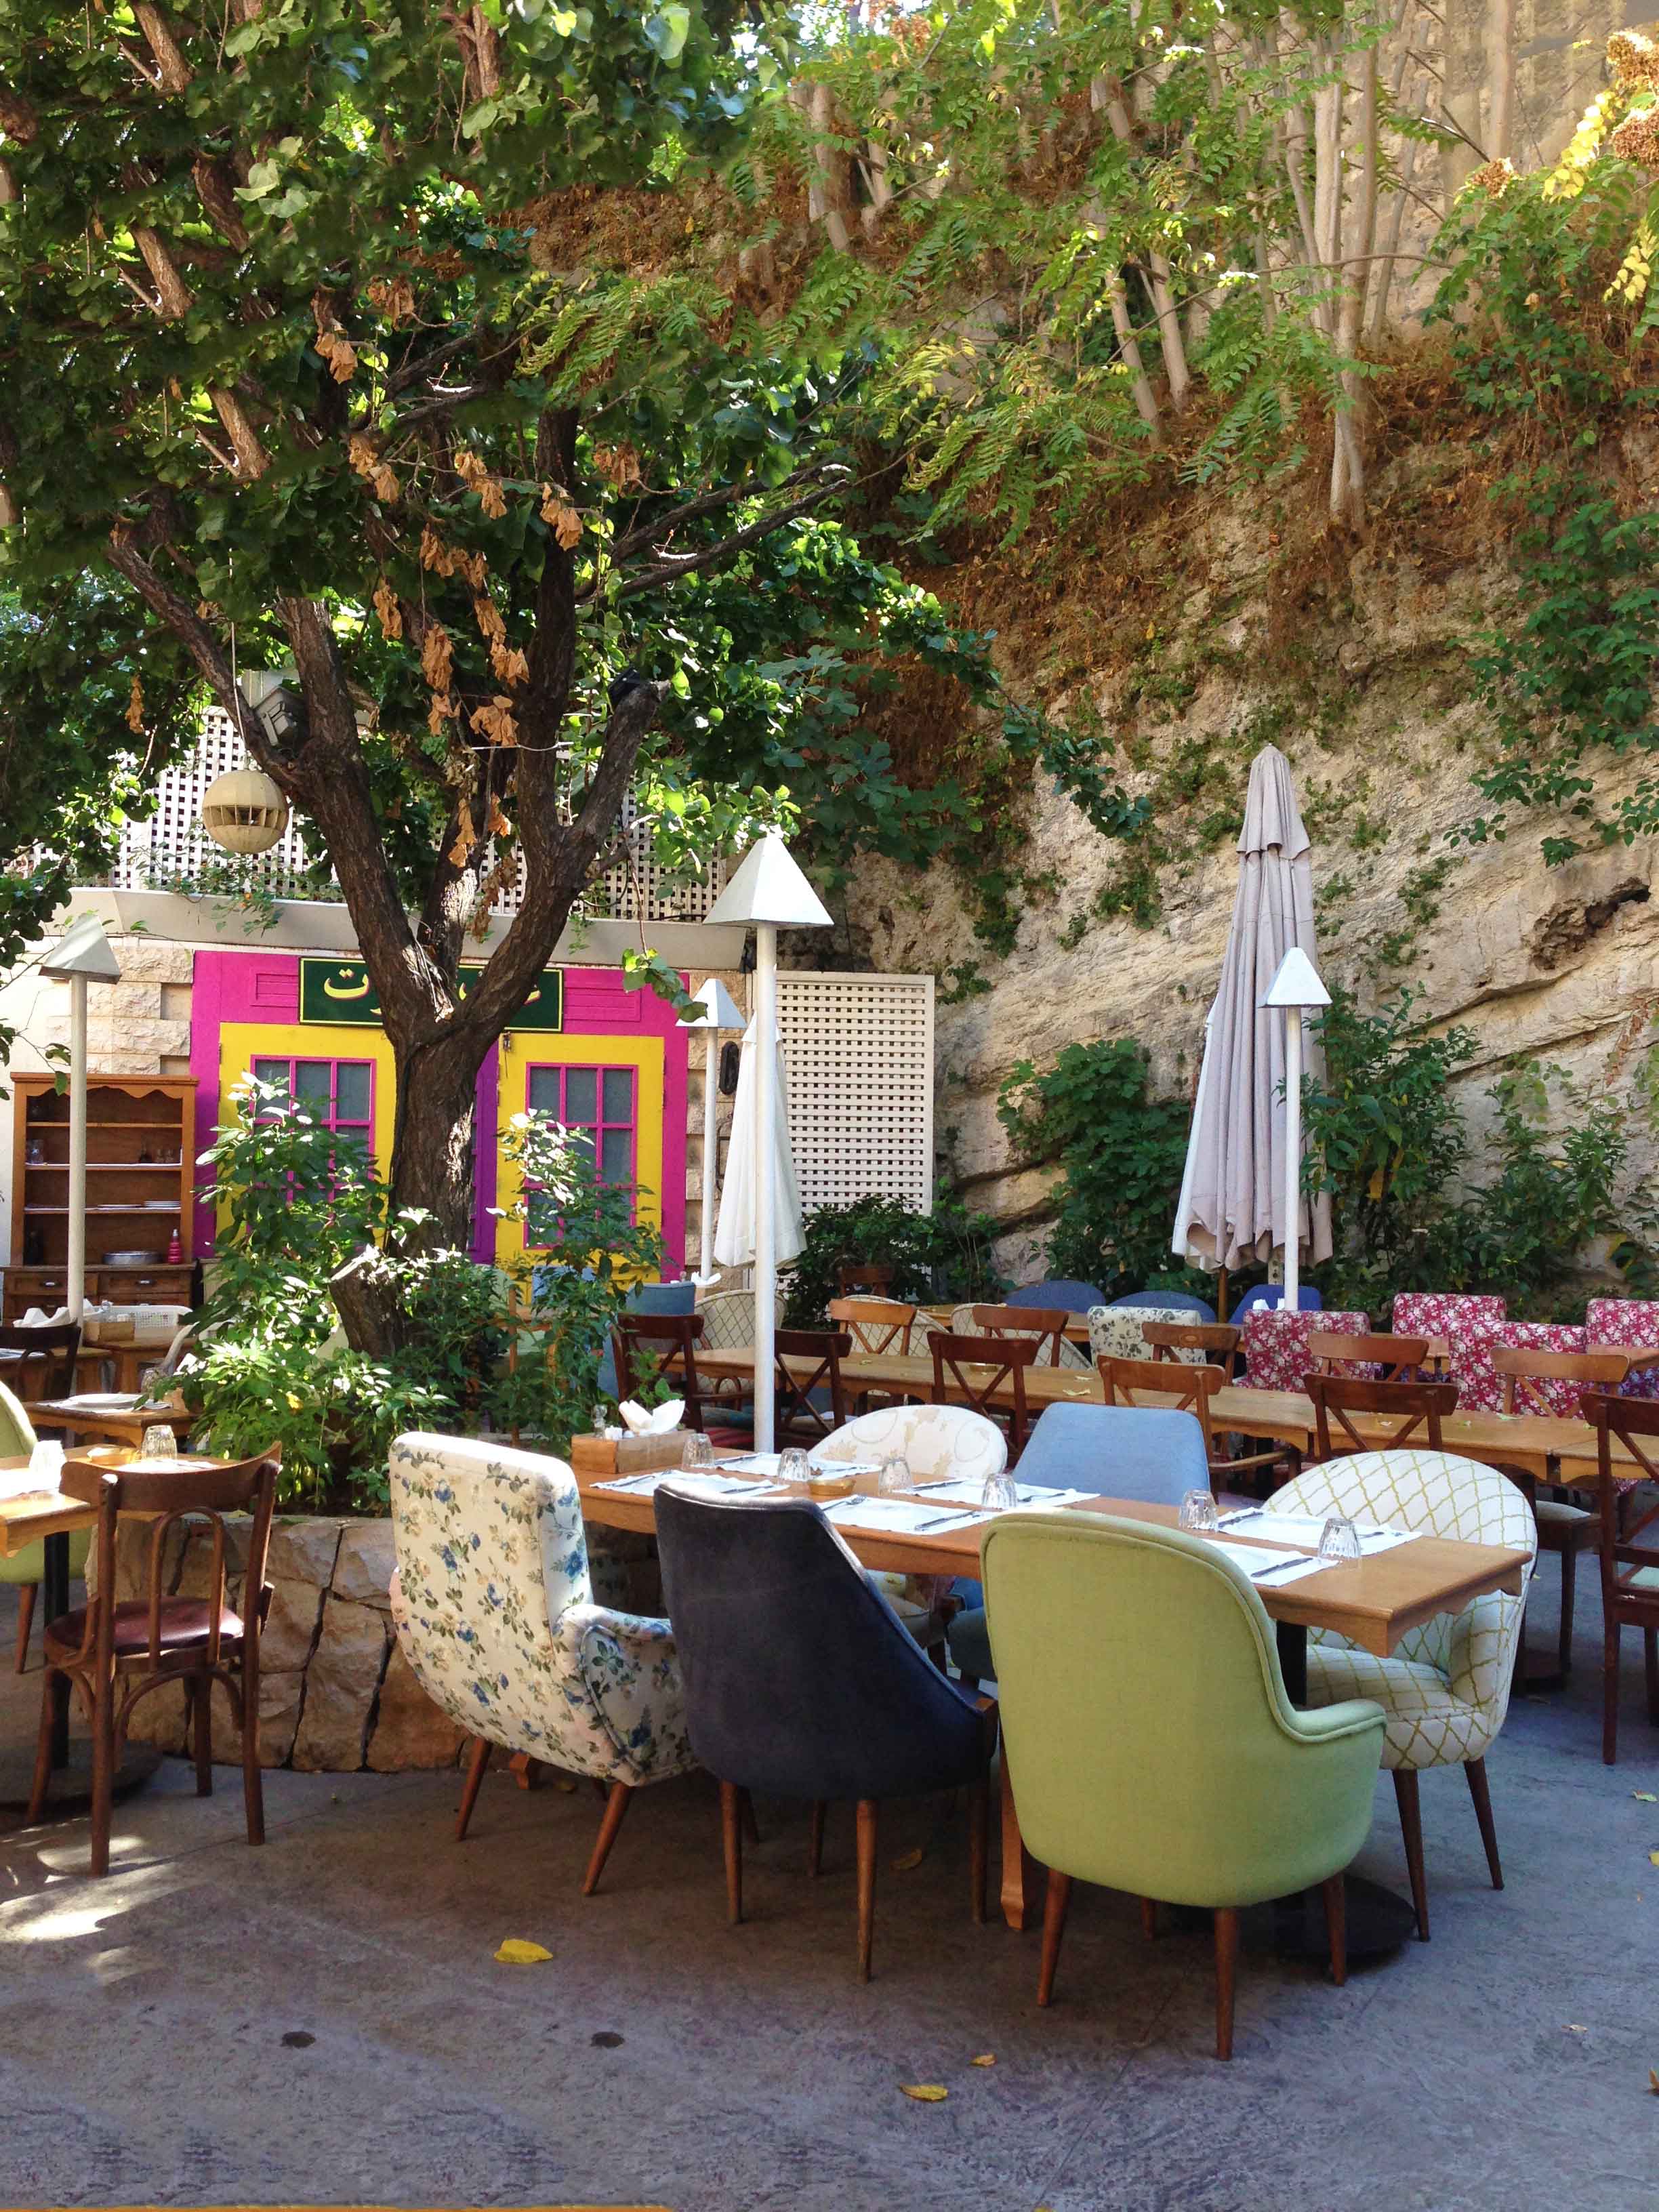 Restaurantes em Beirute: visite o lindinho Enab.